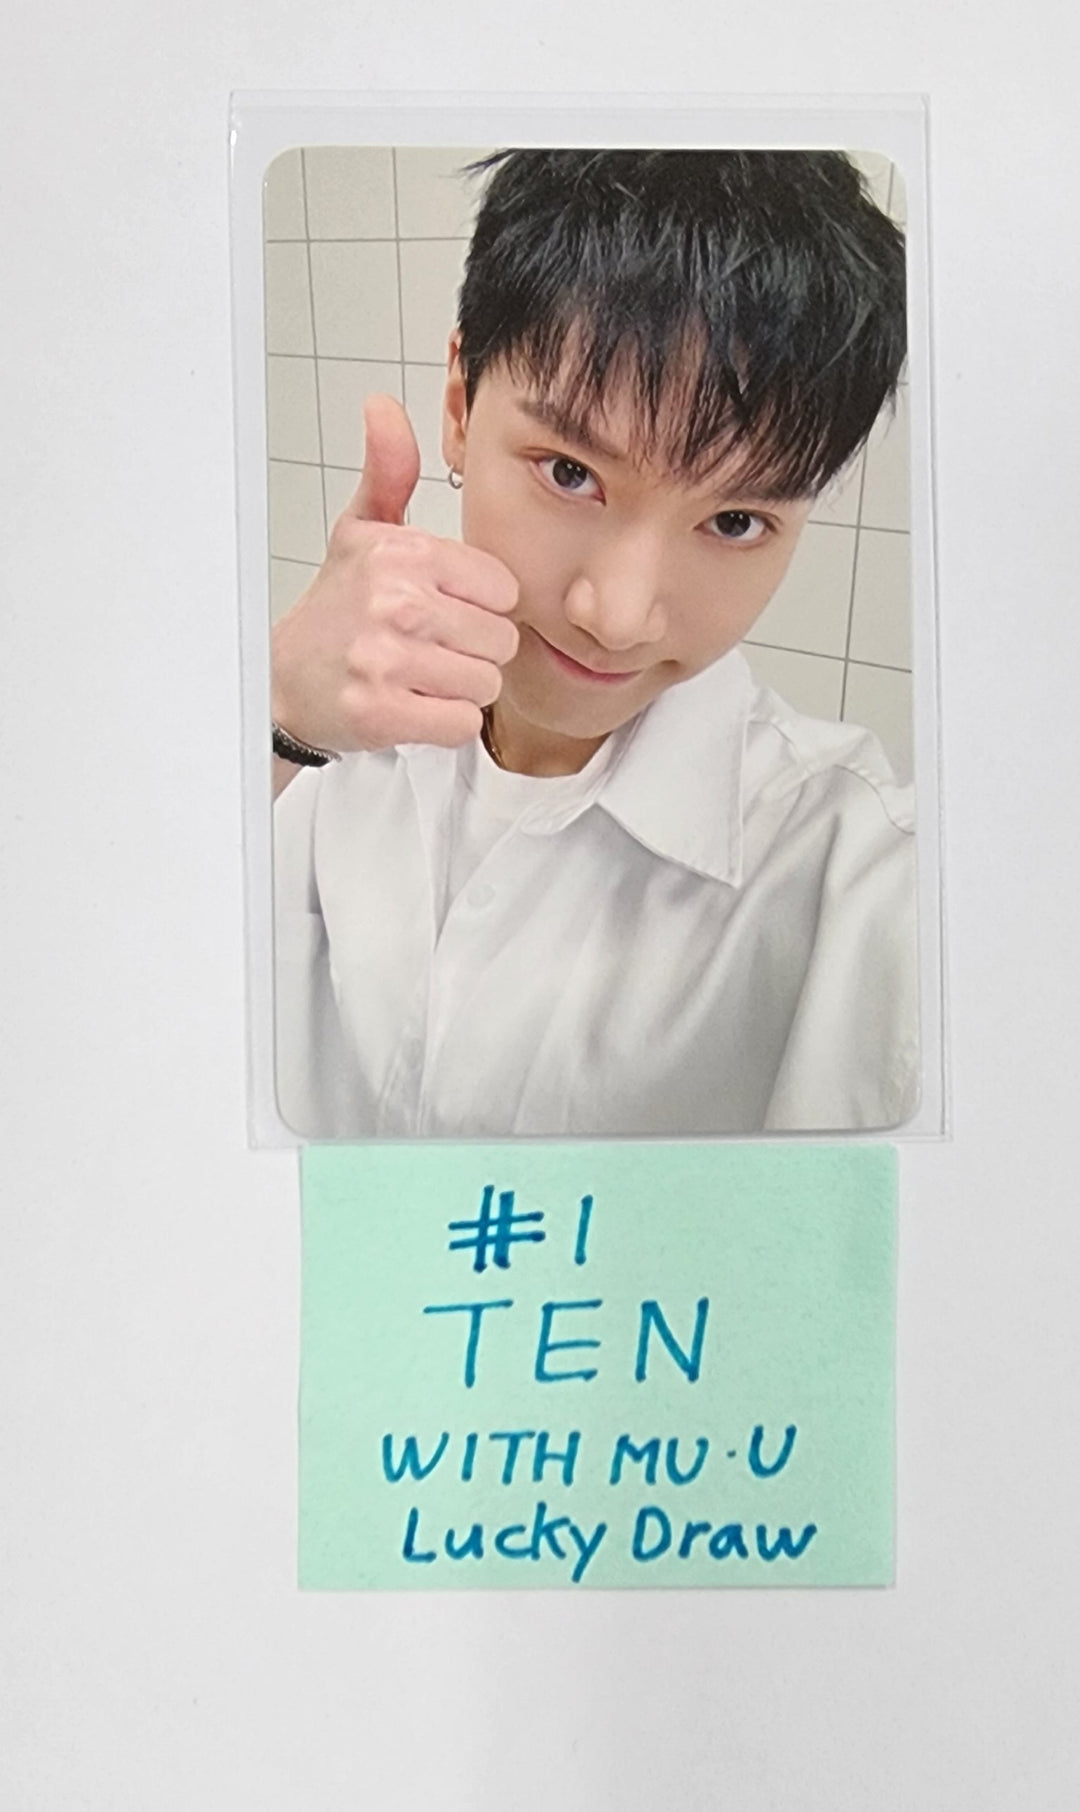 TEN 1st Mini "TEN" - Withmuu 抽選イベントフォトカード [24.3.5]